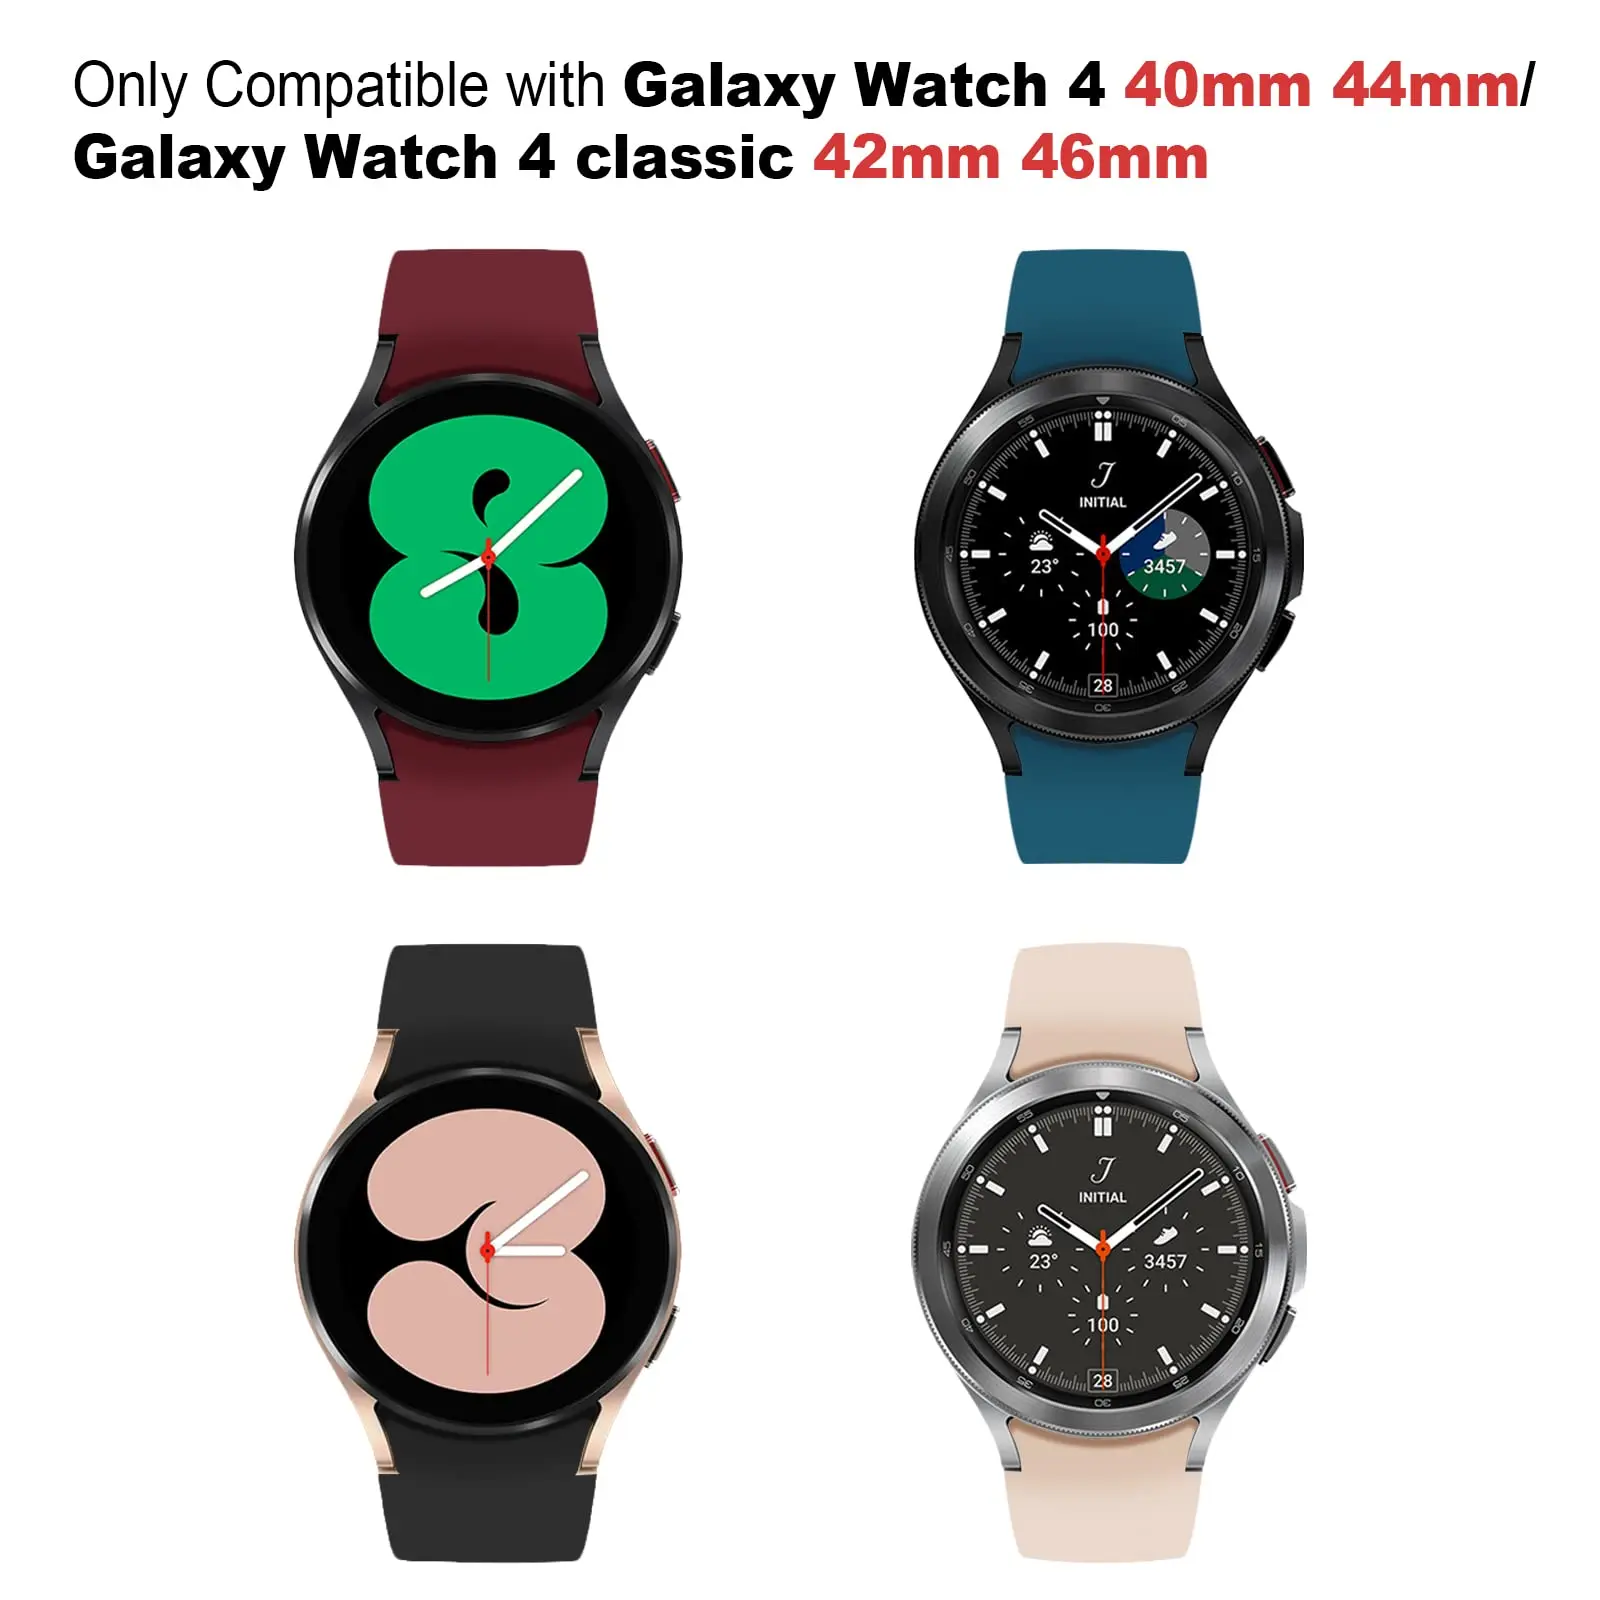 Correa Reloj 20mm Samsung Galaxy Watch 4 Tejido Flexible - Morado - Spain